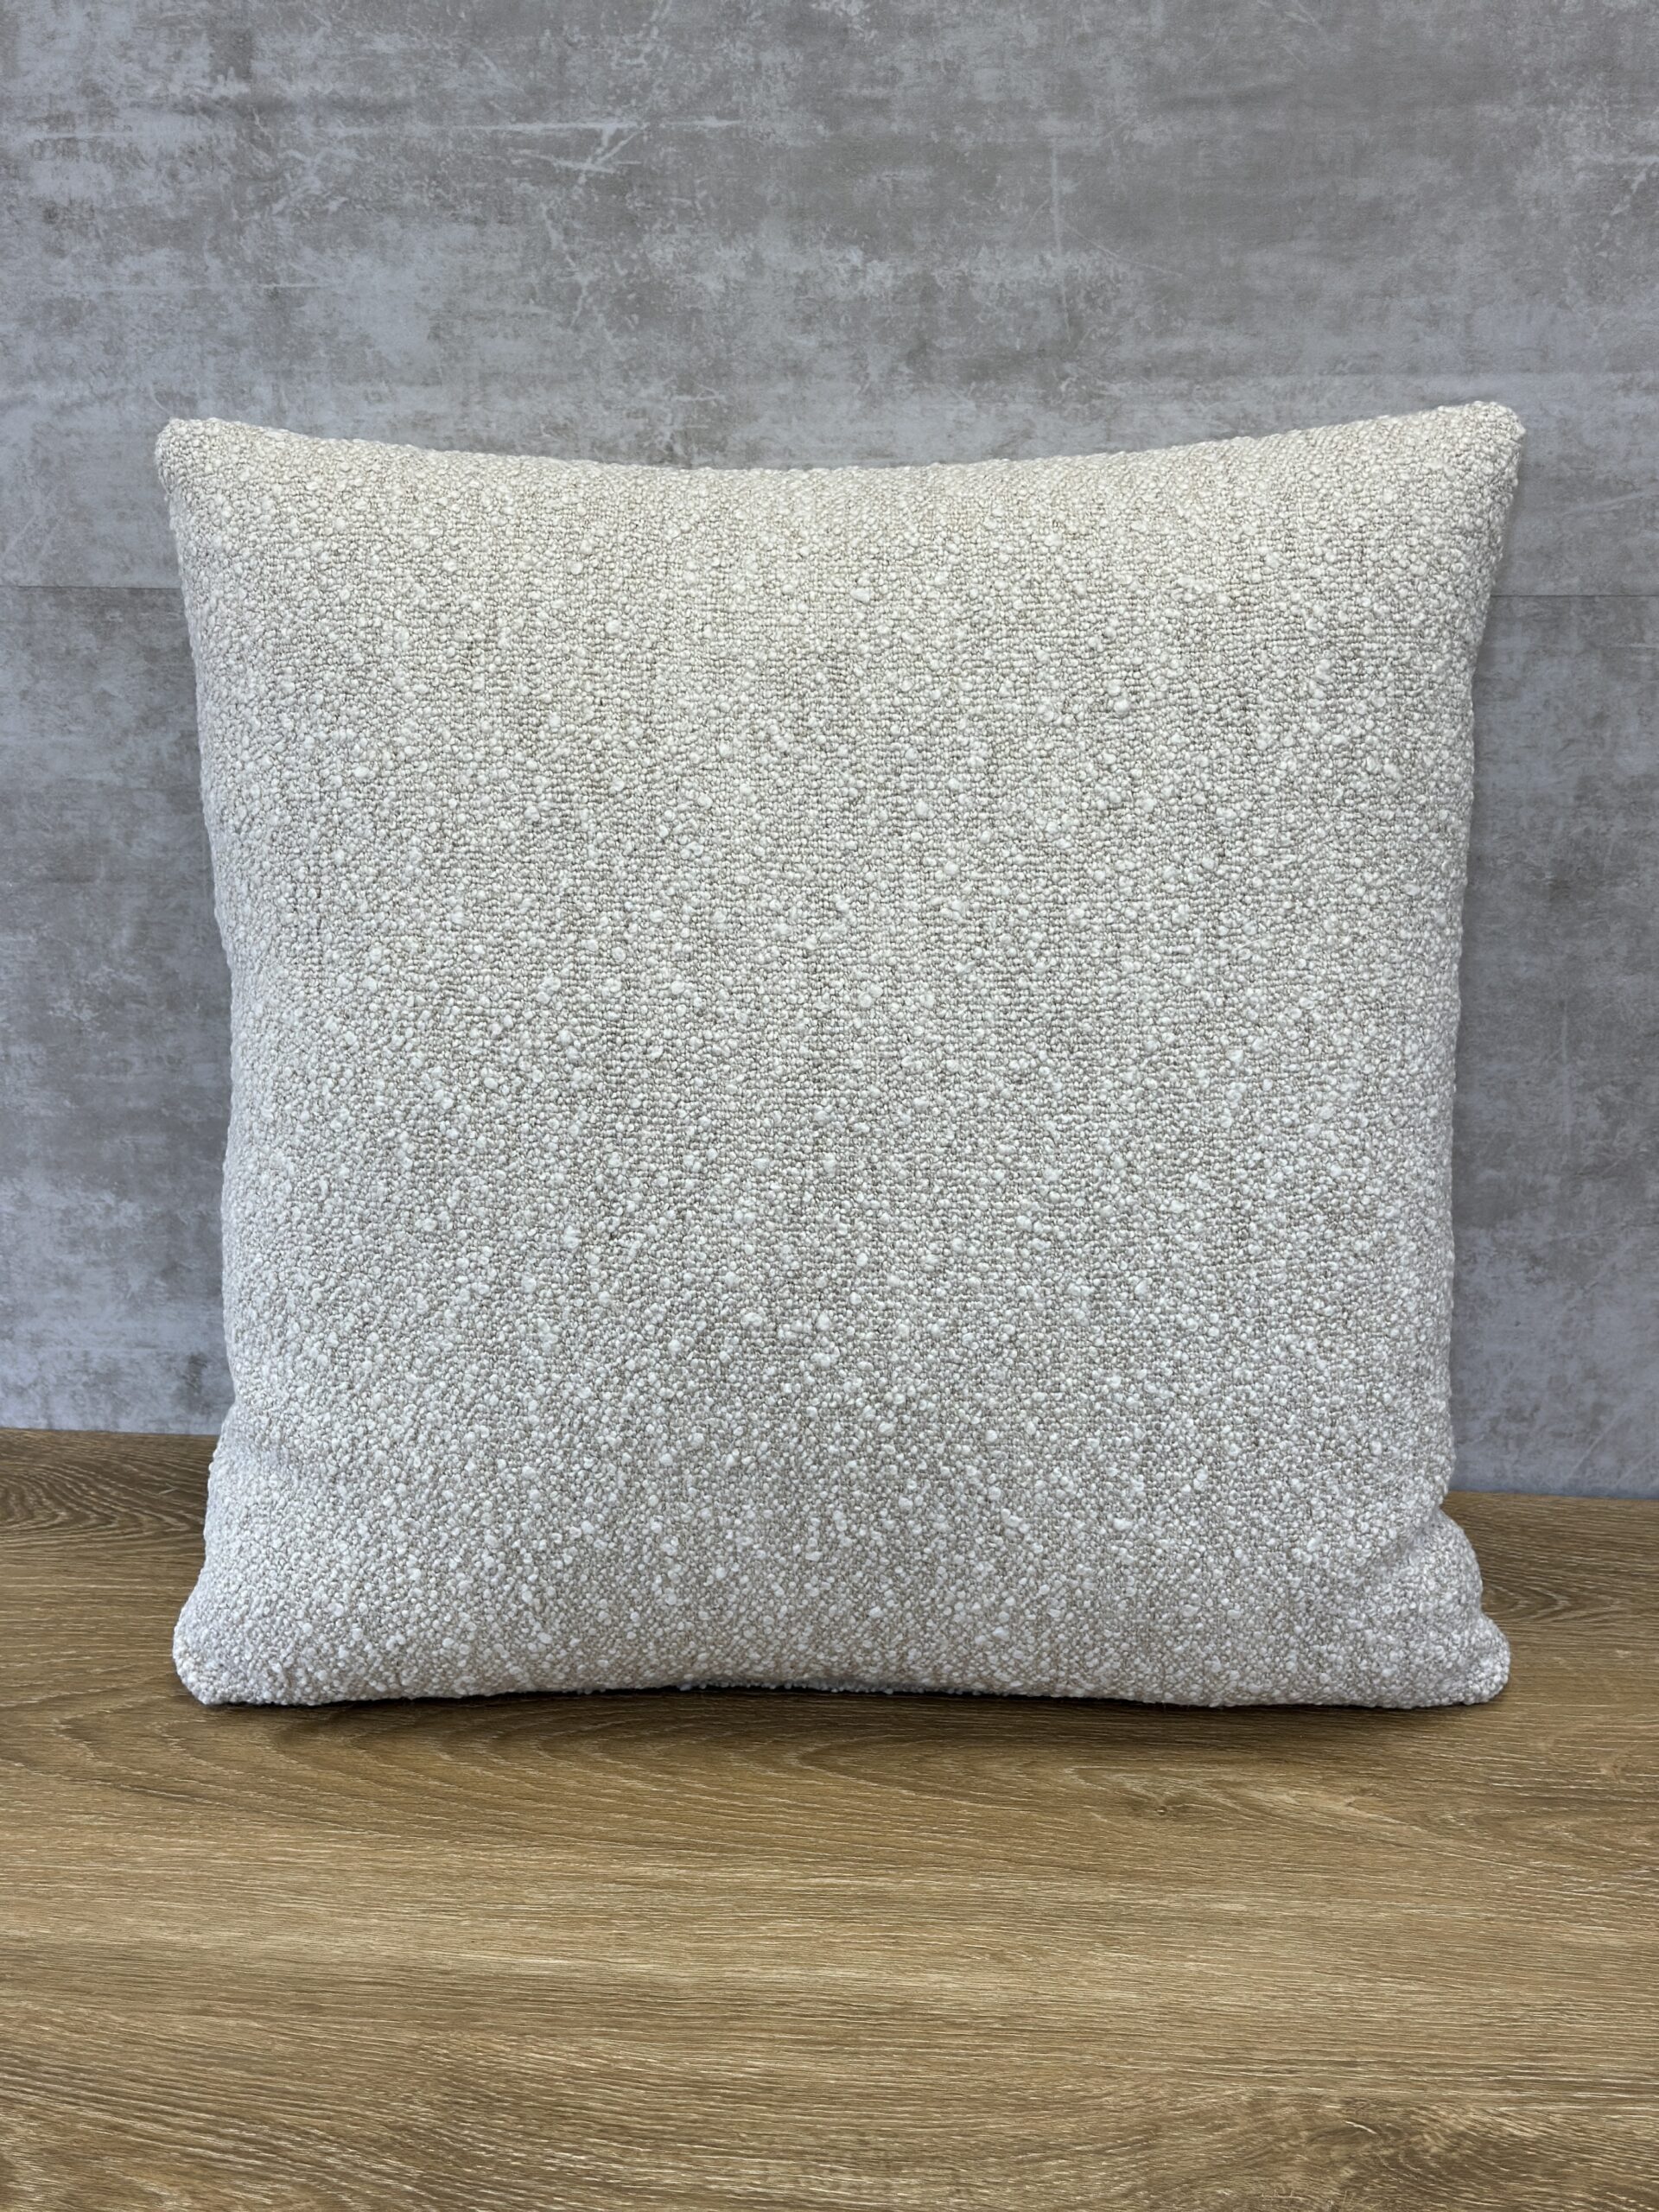 Larsen Vail Pillows